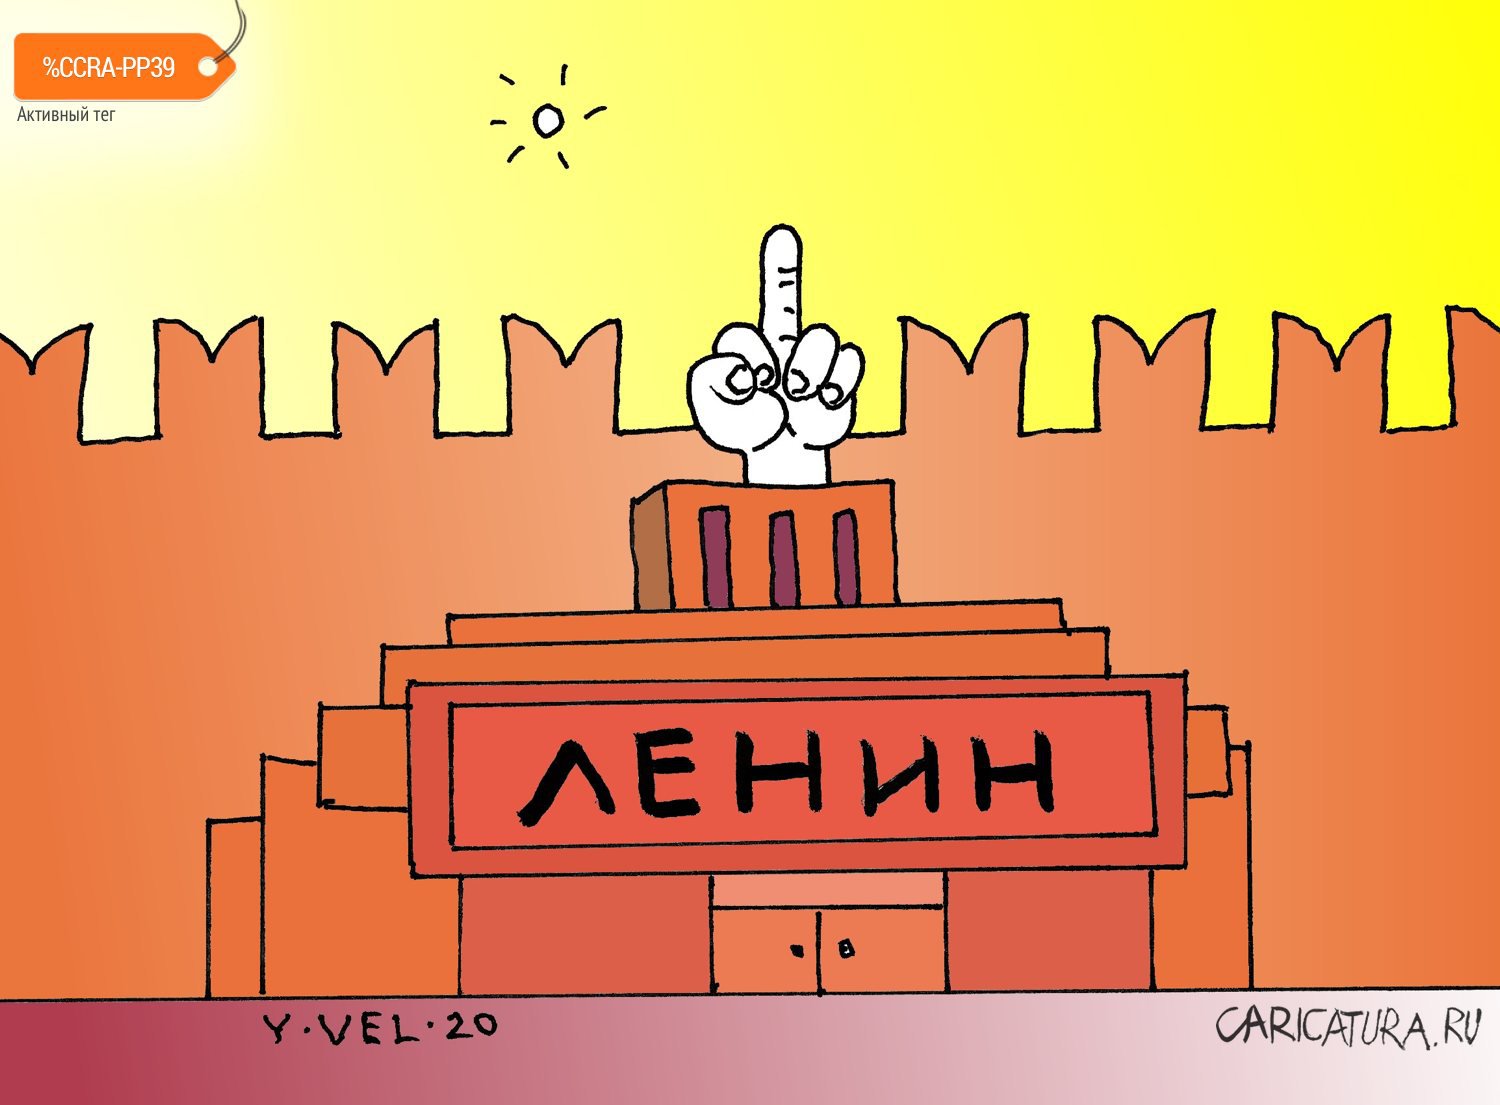 Карикатура "Ленин жив", Юрий Величко